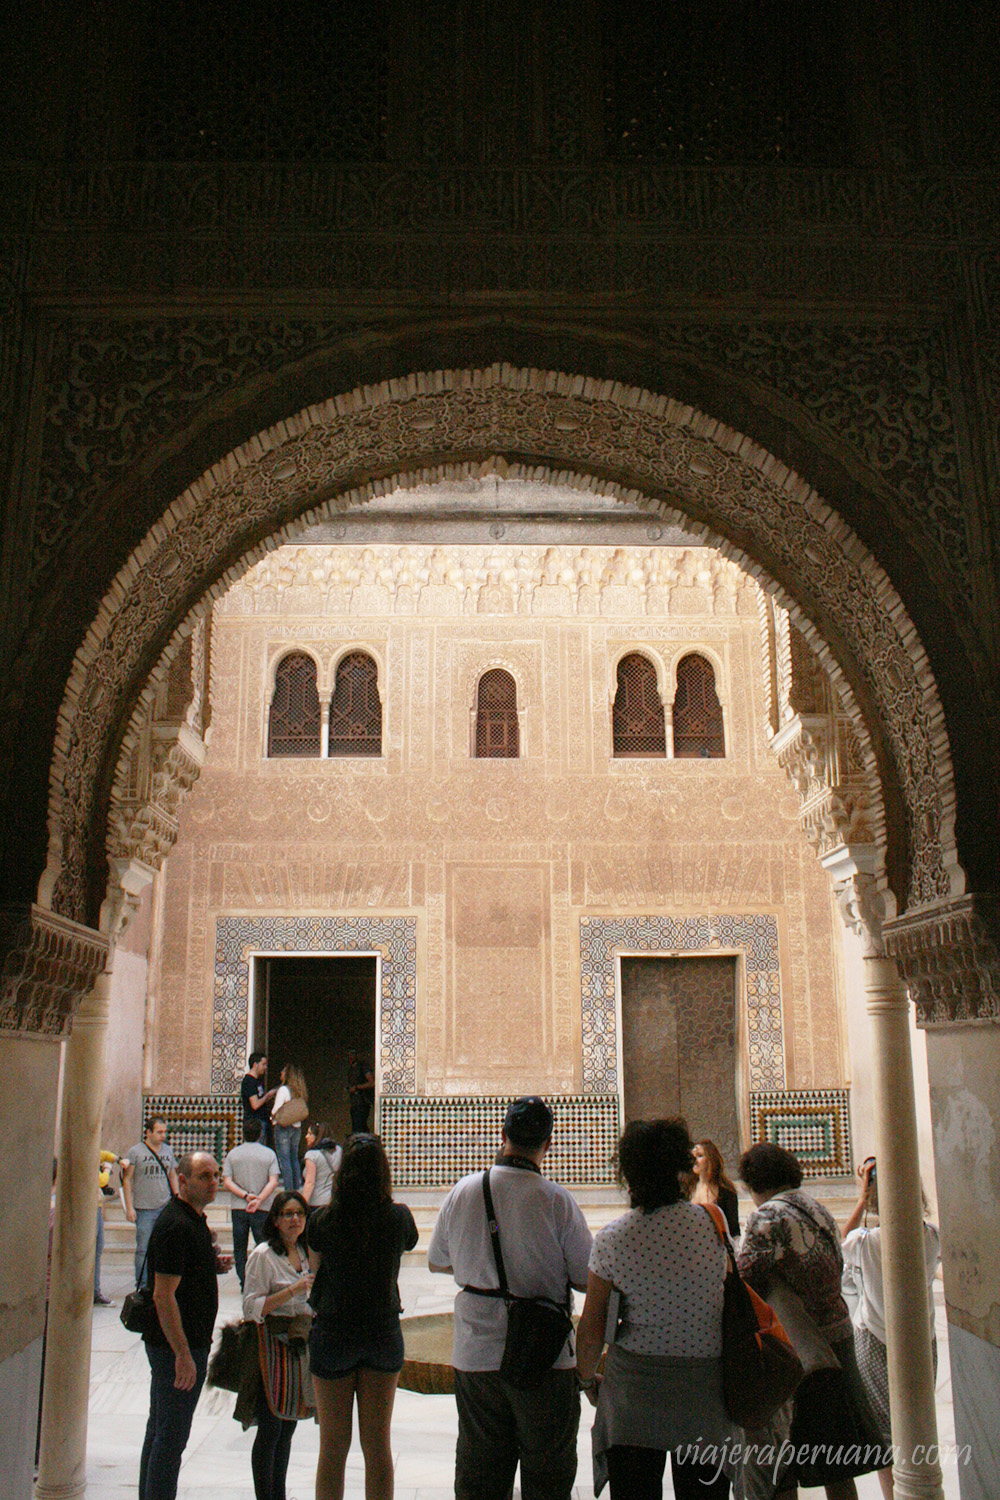 La forma de los arcos de los pórticos y ventanas que se hallan en la Alhambra también pueden encontrarse caminando por la ciudad de Granada. El entramado decorativo que cubre las ventanas es un clásico de la arquitectura hispánica.